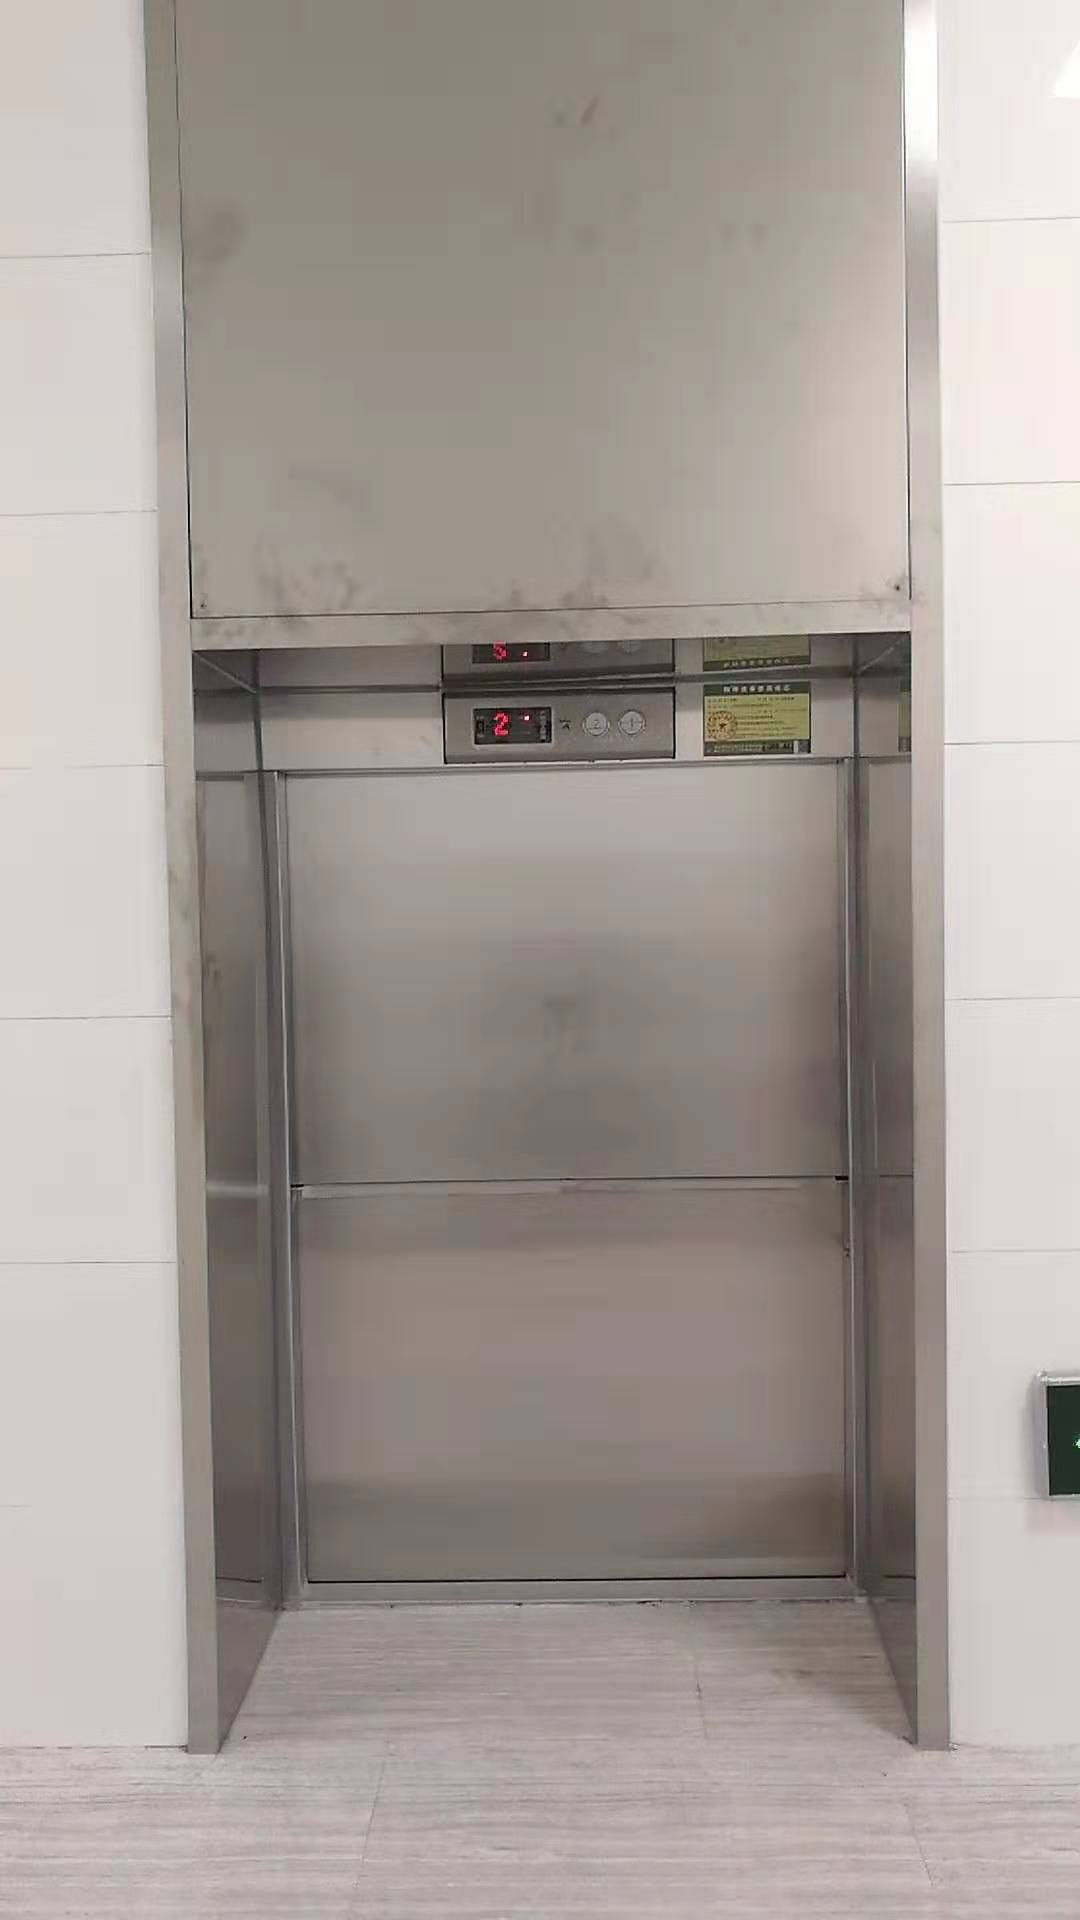 南京菜梯杂物电梯品牌 送菜电梯 结构牢固 运行平稳